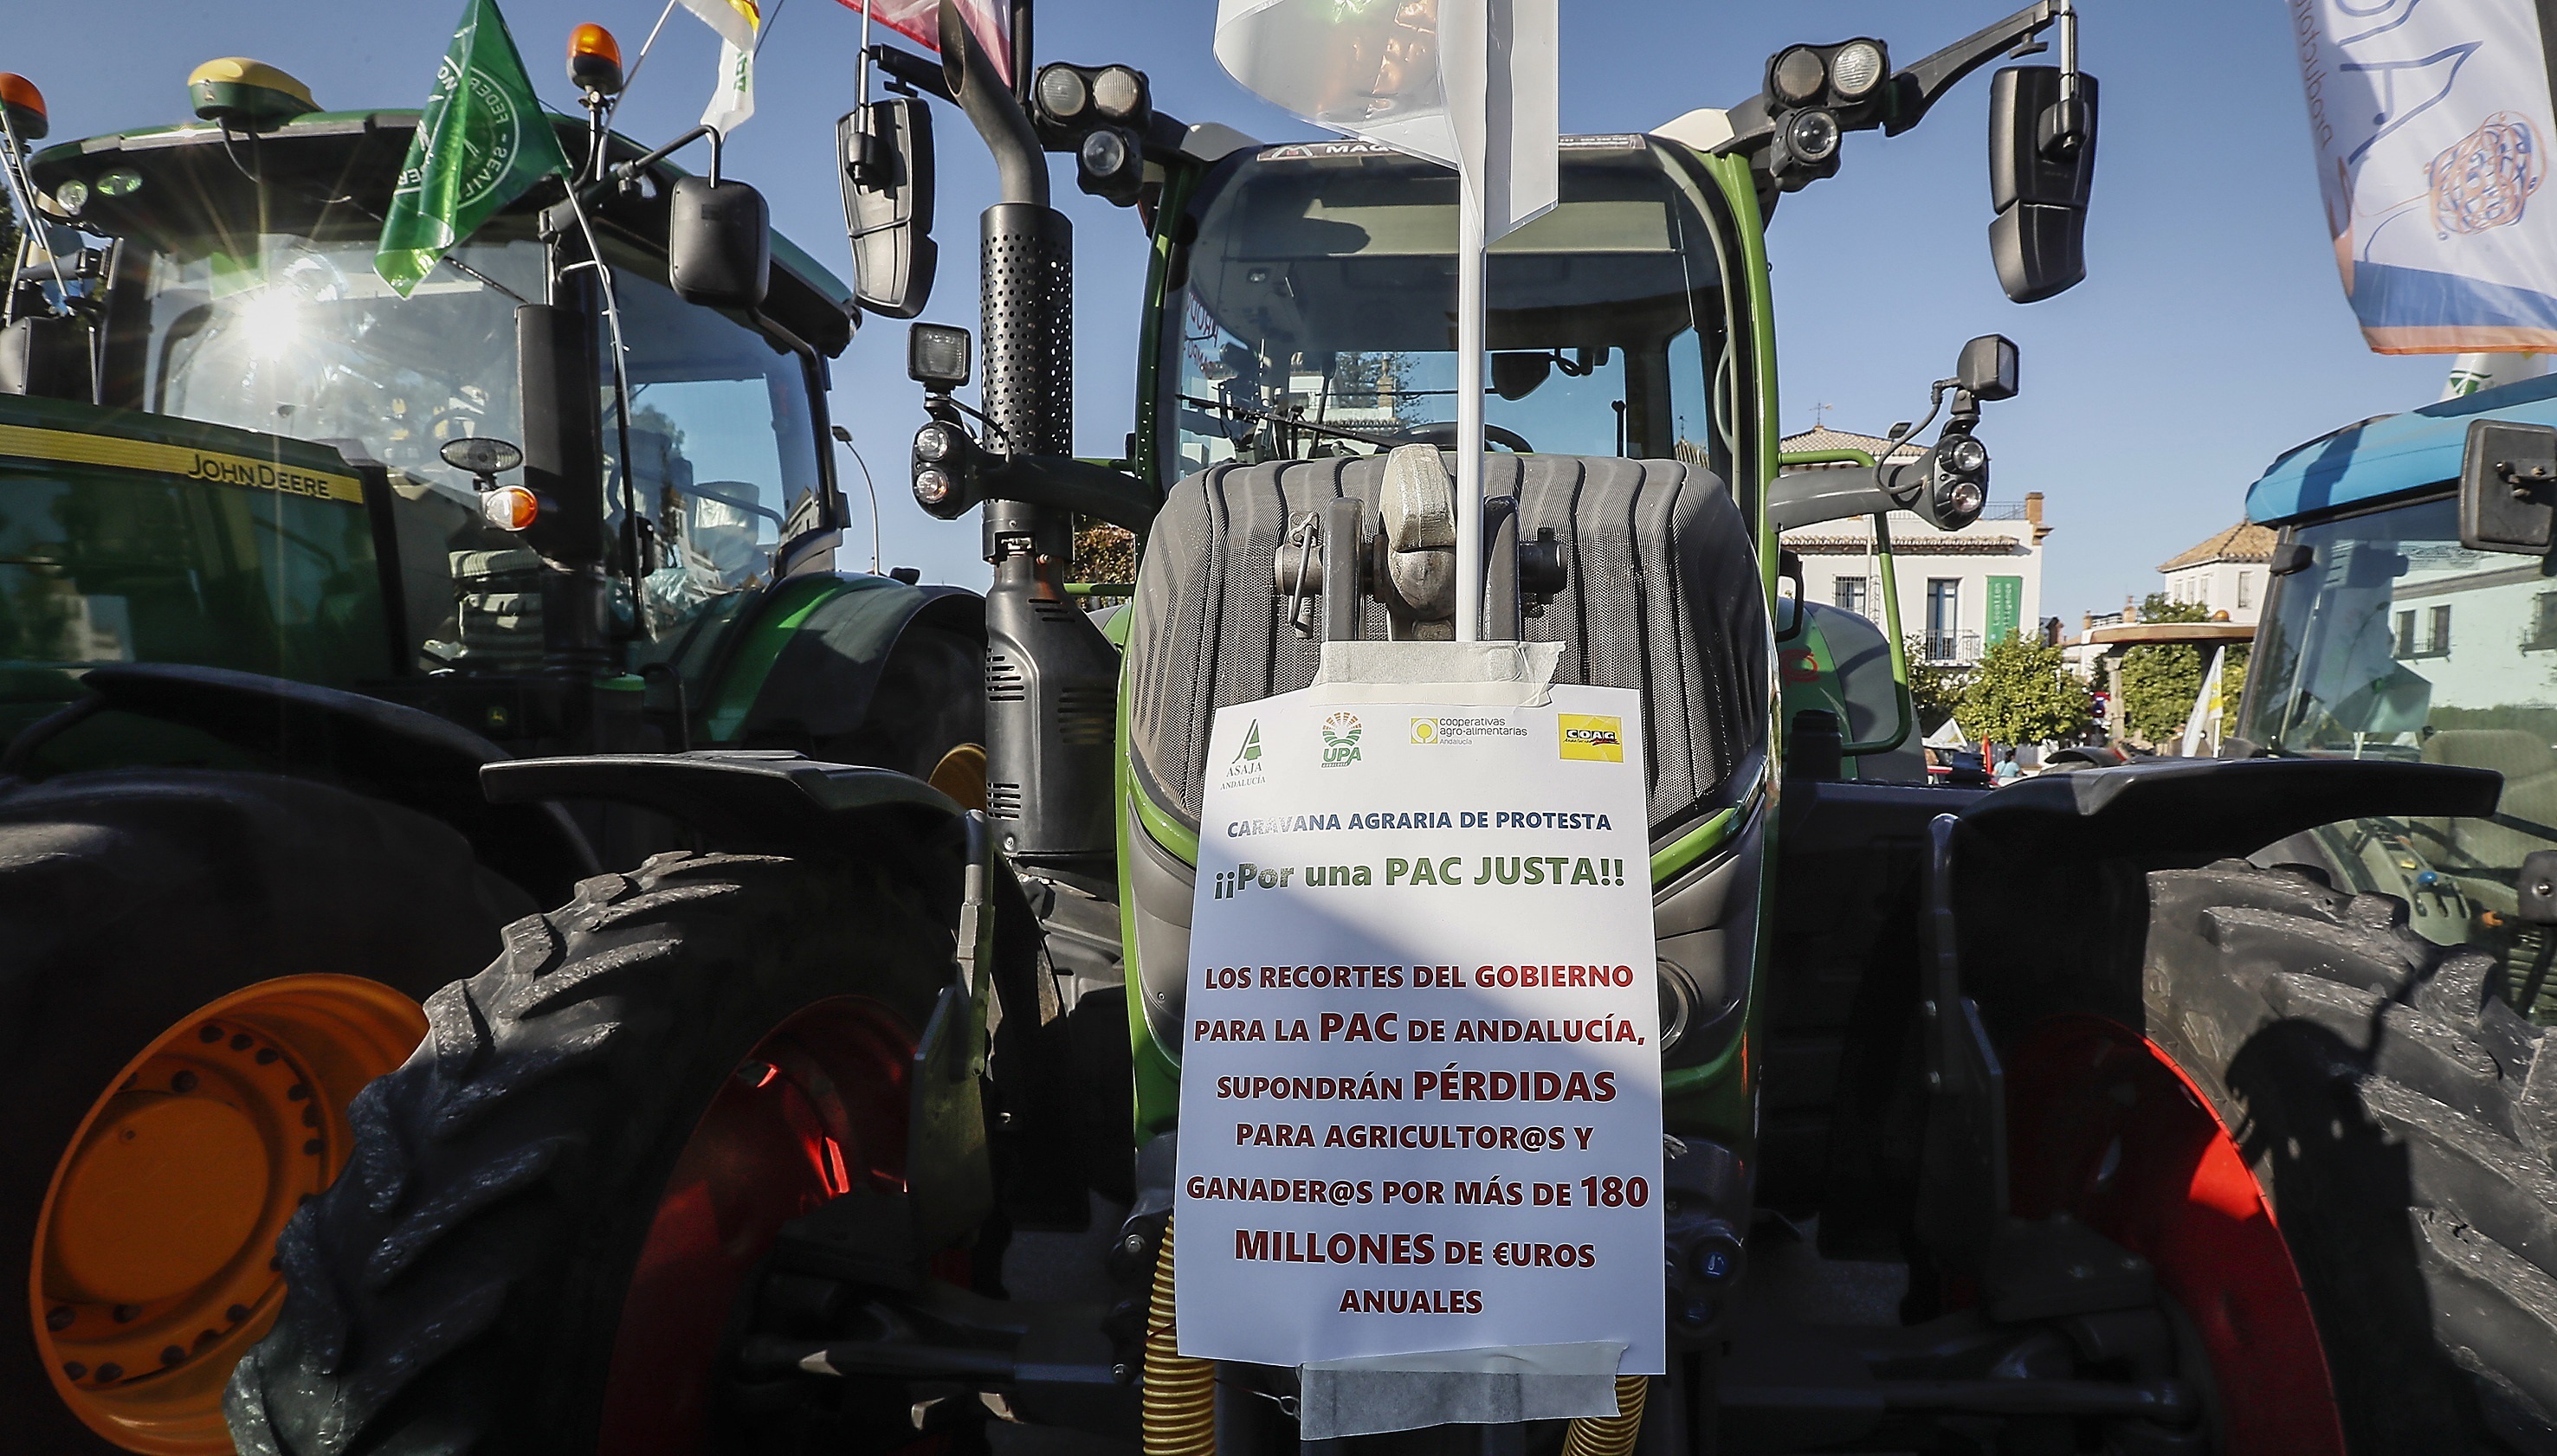 Tractores participantes en la marcha celebrada este jueves en Sevilla.